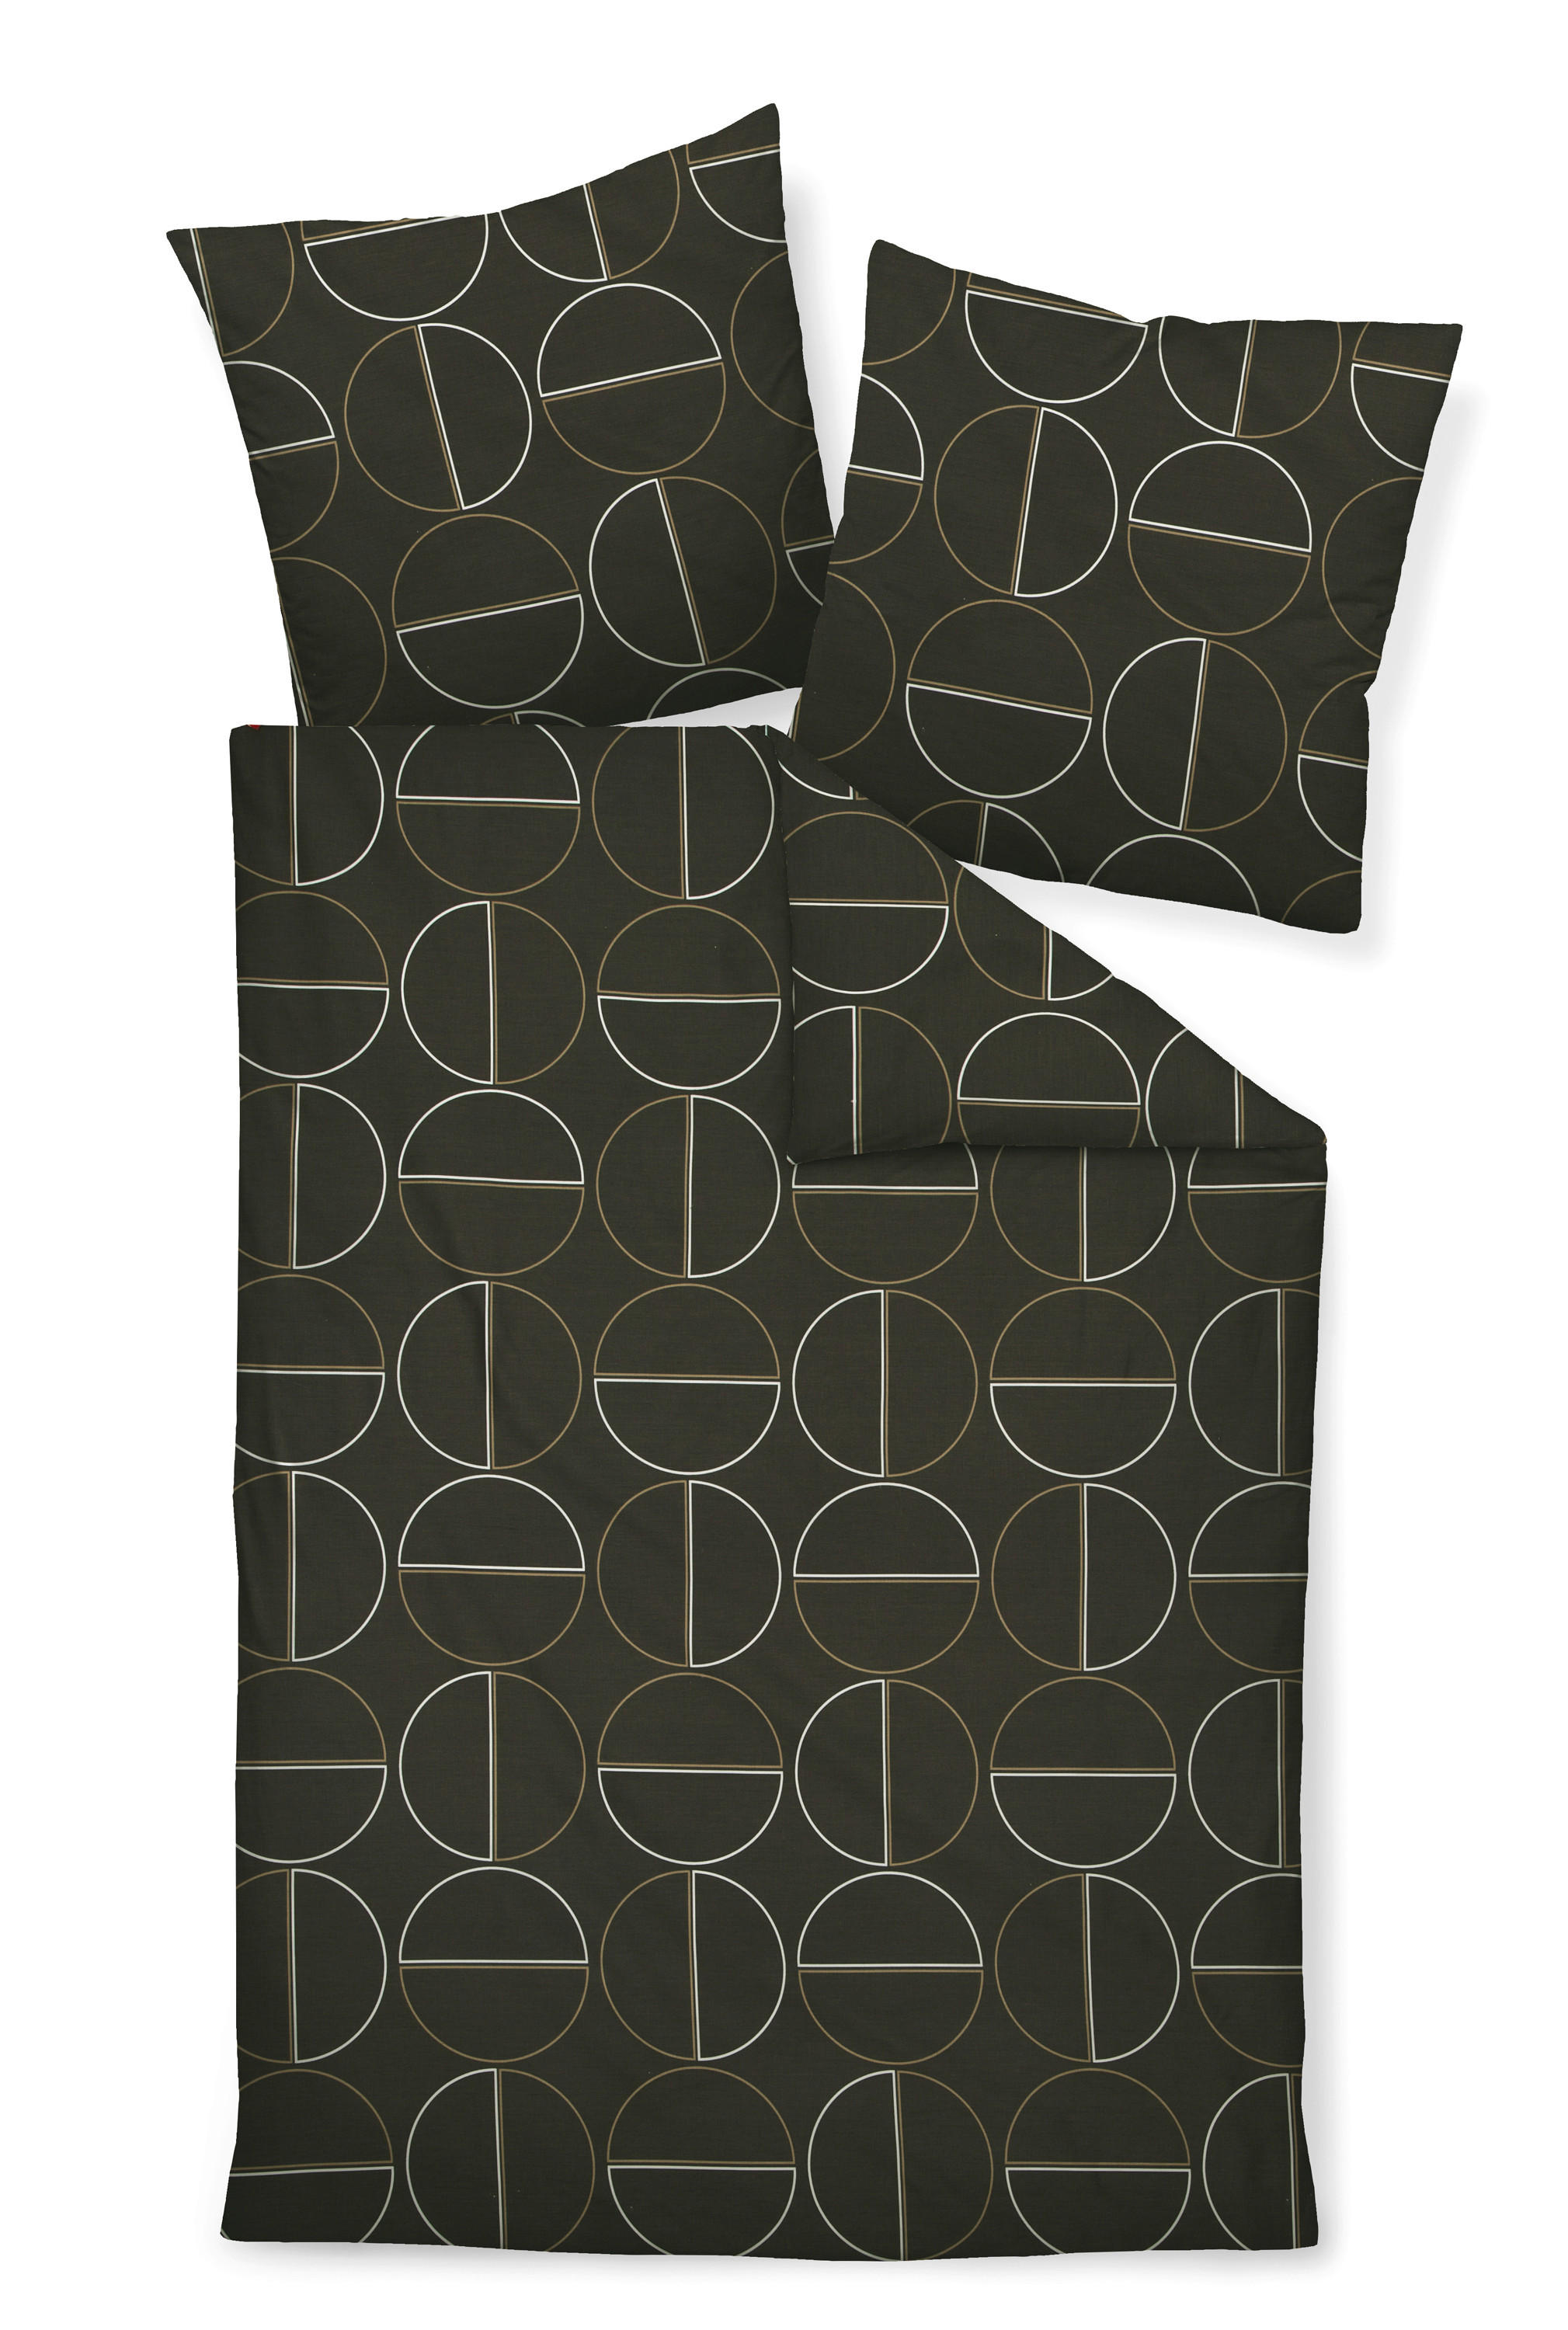 BETTWÄSCHE J.D. Makosatin  - Beige/Braun, Design, Textil (135/200cm) - Janine